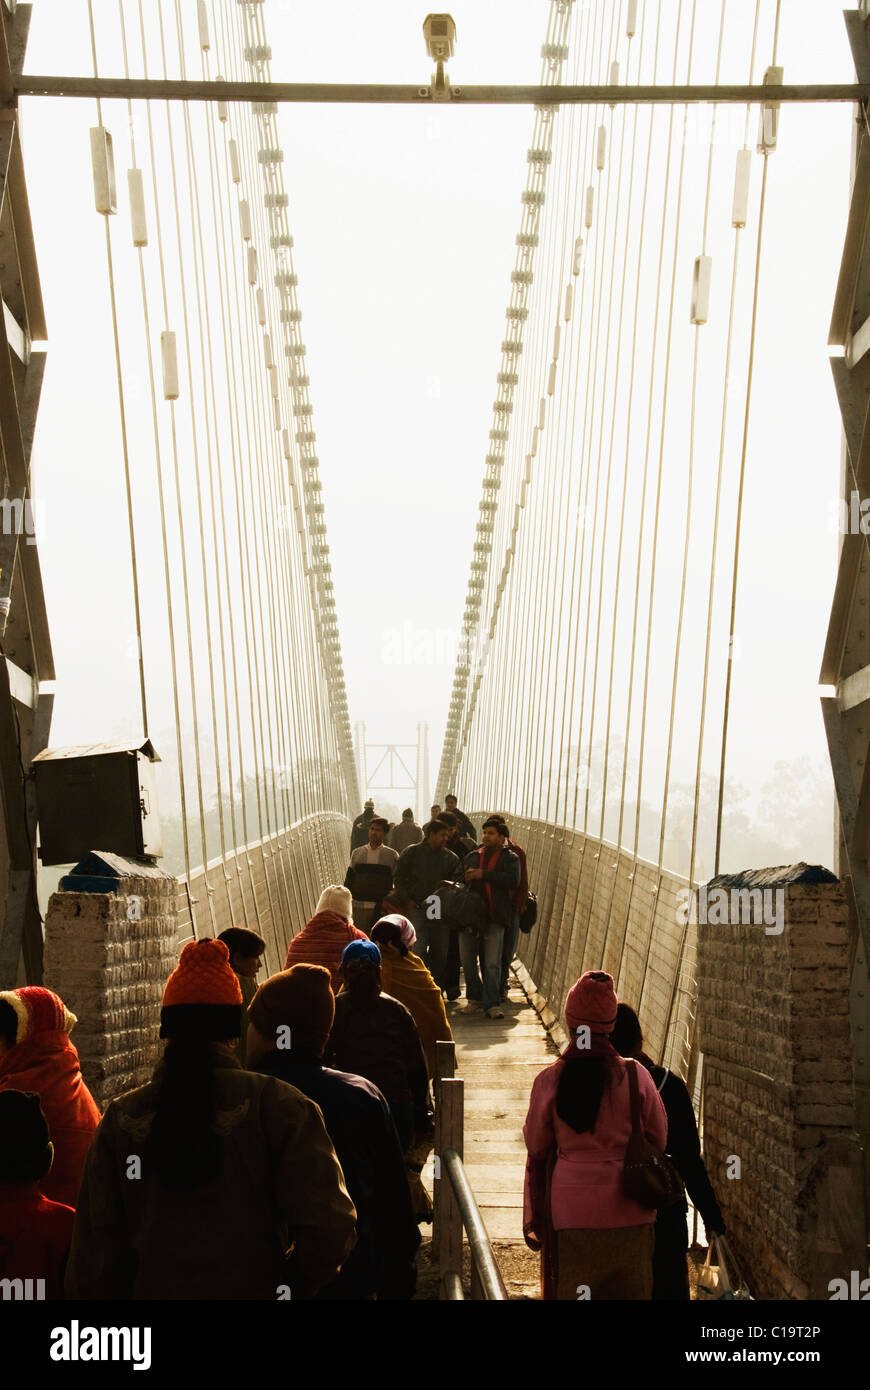 Les touristes marchant sur un pont suspendu, Lakshman Jhula, Gange, Rishikesh, Inde, Uttarakhand Banque D'Images